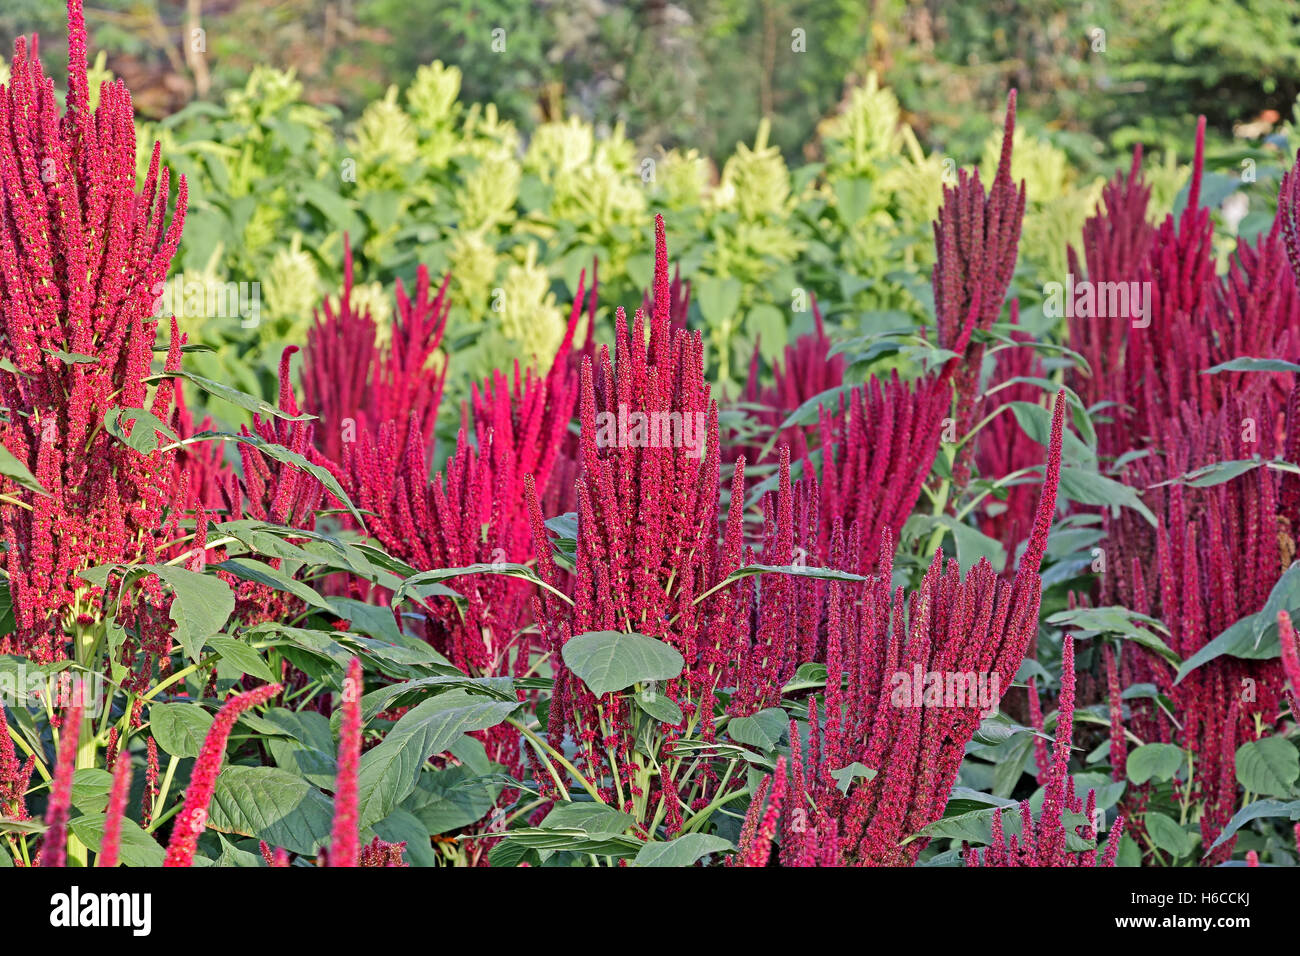 Rouge indien et de l'amarante verte plantes en champ. L'amarante est cultivé comme les légumes feuilles, les céréales et les plantes ornementales. Banque D'Images